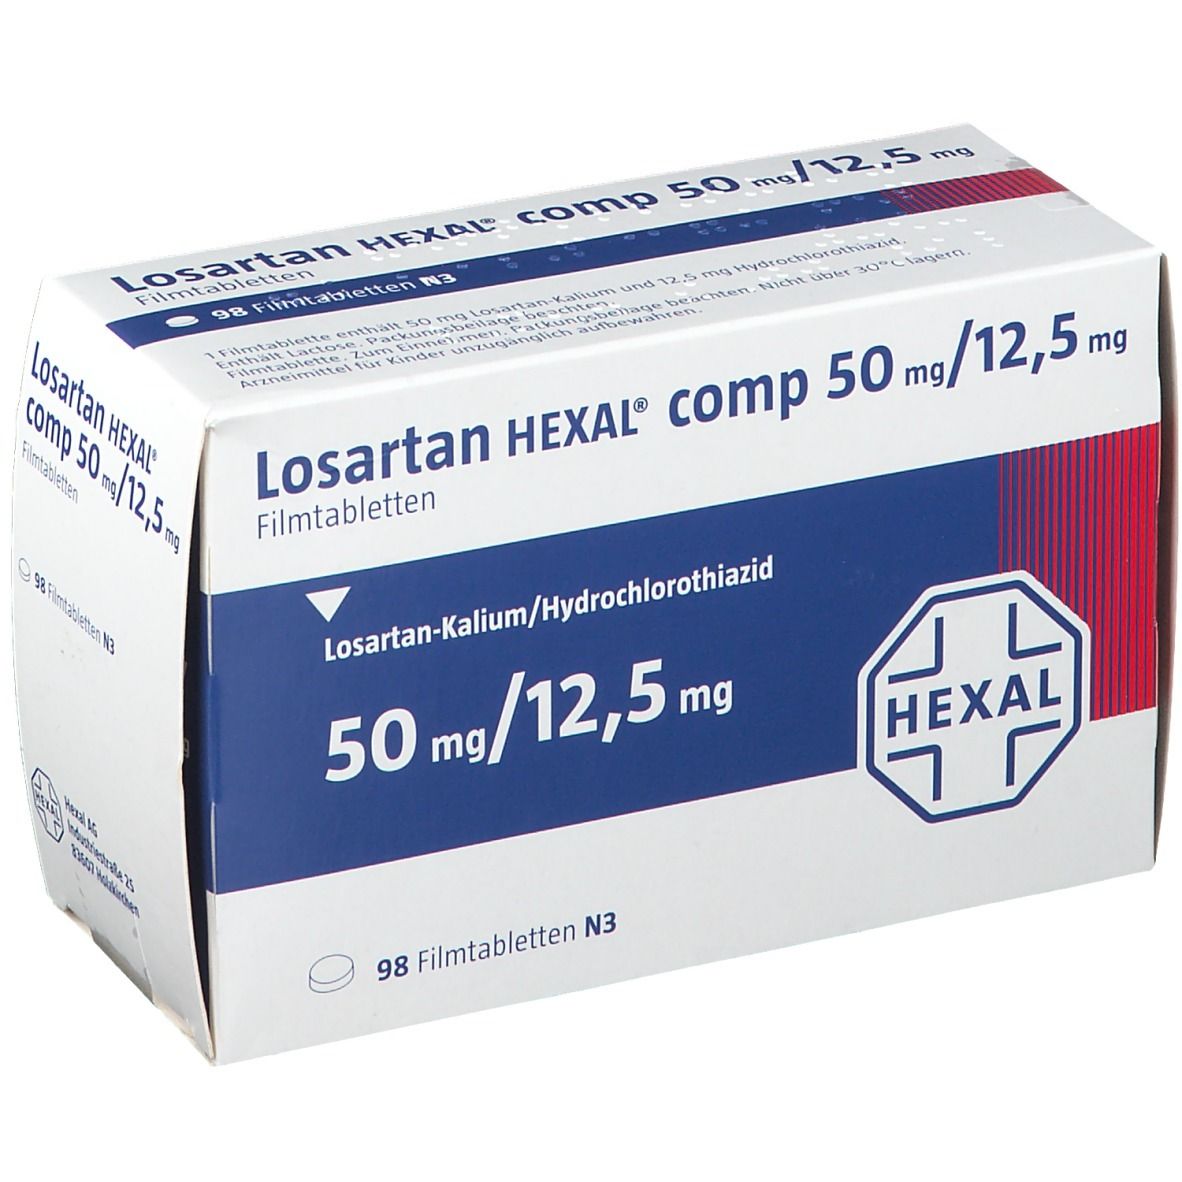 Losartan HEXAL® comp 50 mg/12,5 mg